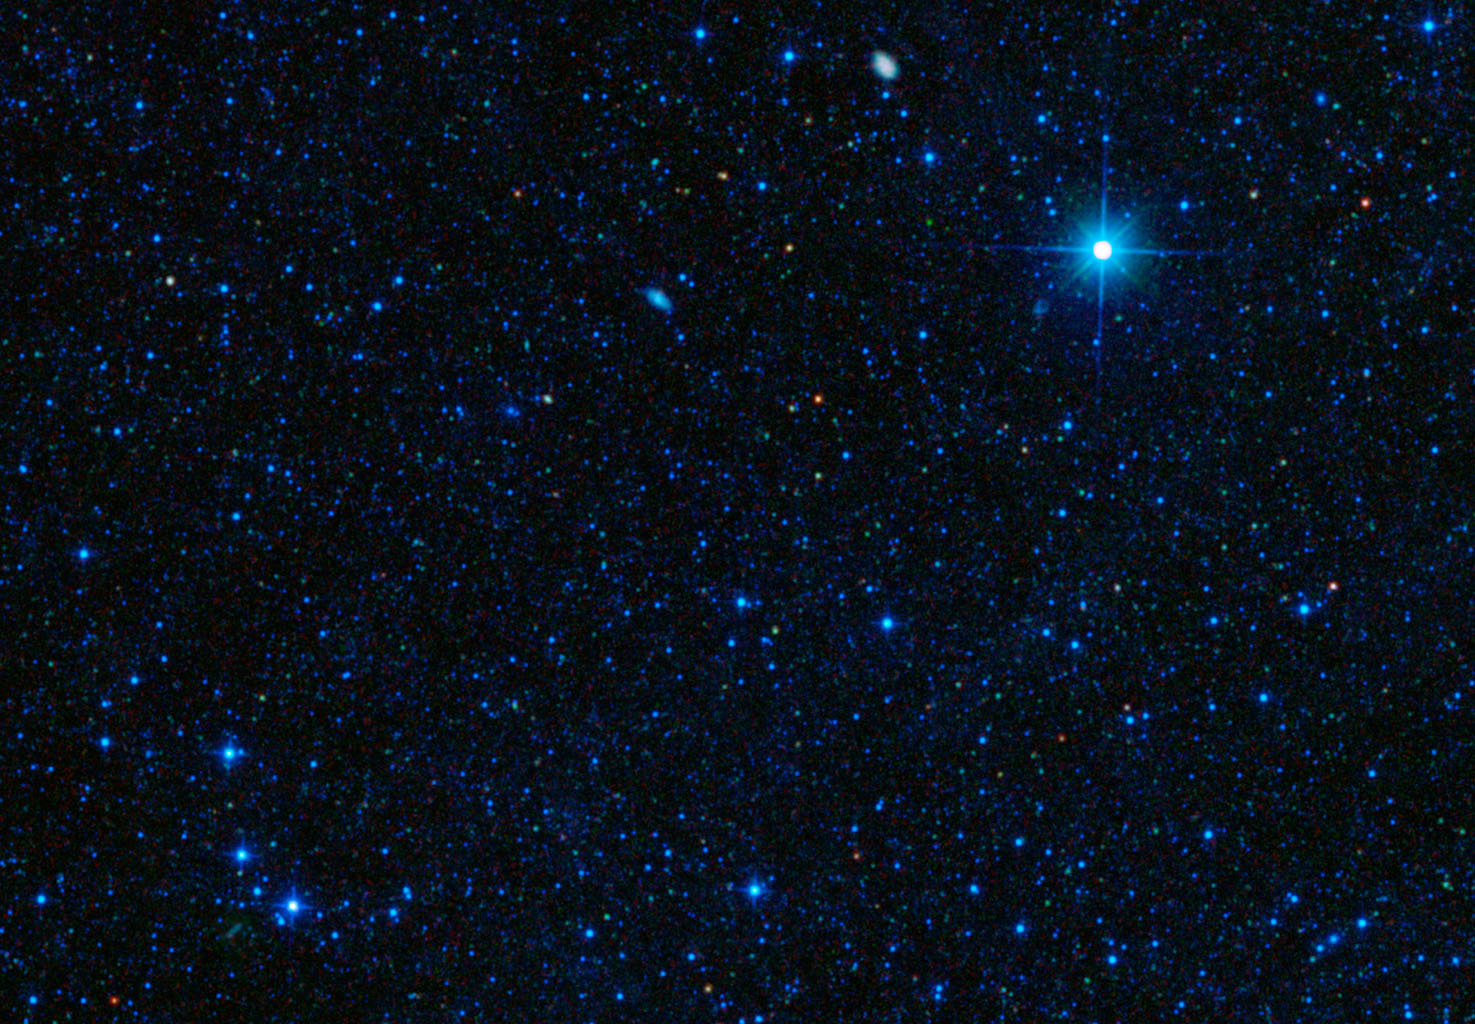 Galaxy Packs Big Star-Making Punch | JPL, NASA